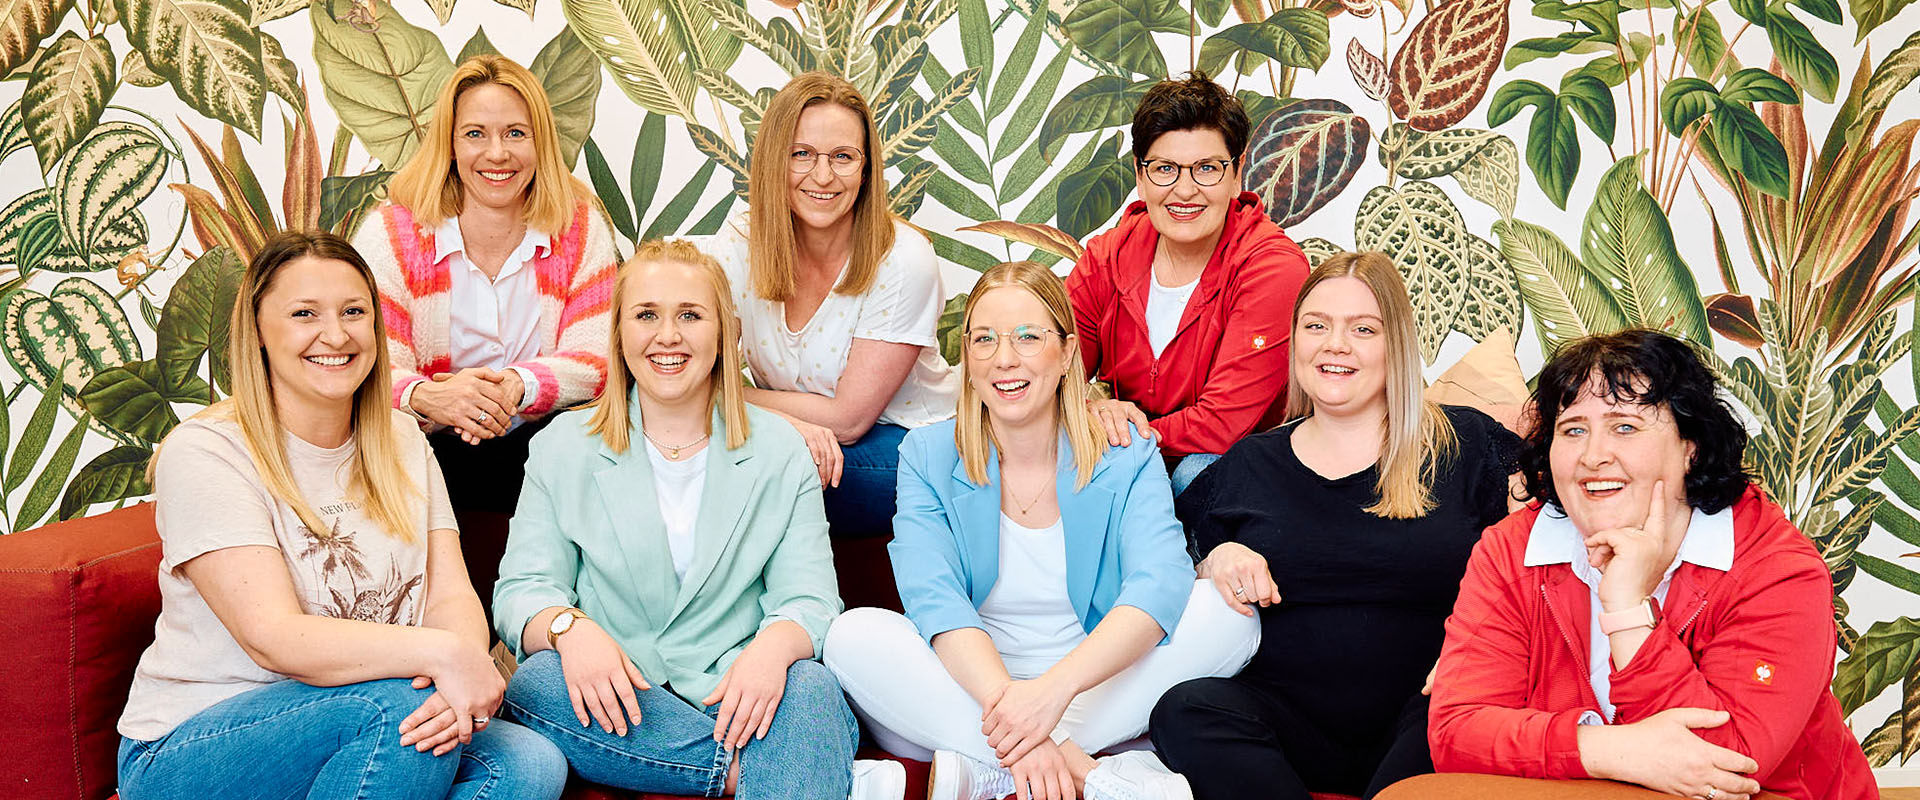 Zahnarztpraxis Pfau in Rottweil: Gruppenbild der ZFA der Veraltung zeigt acht lächelnde Frauen